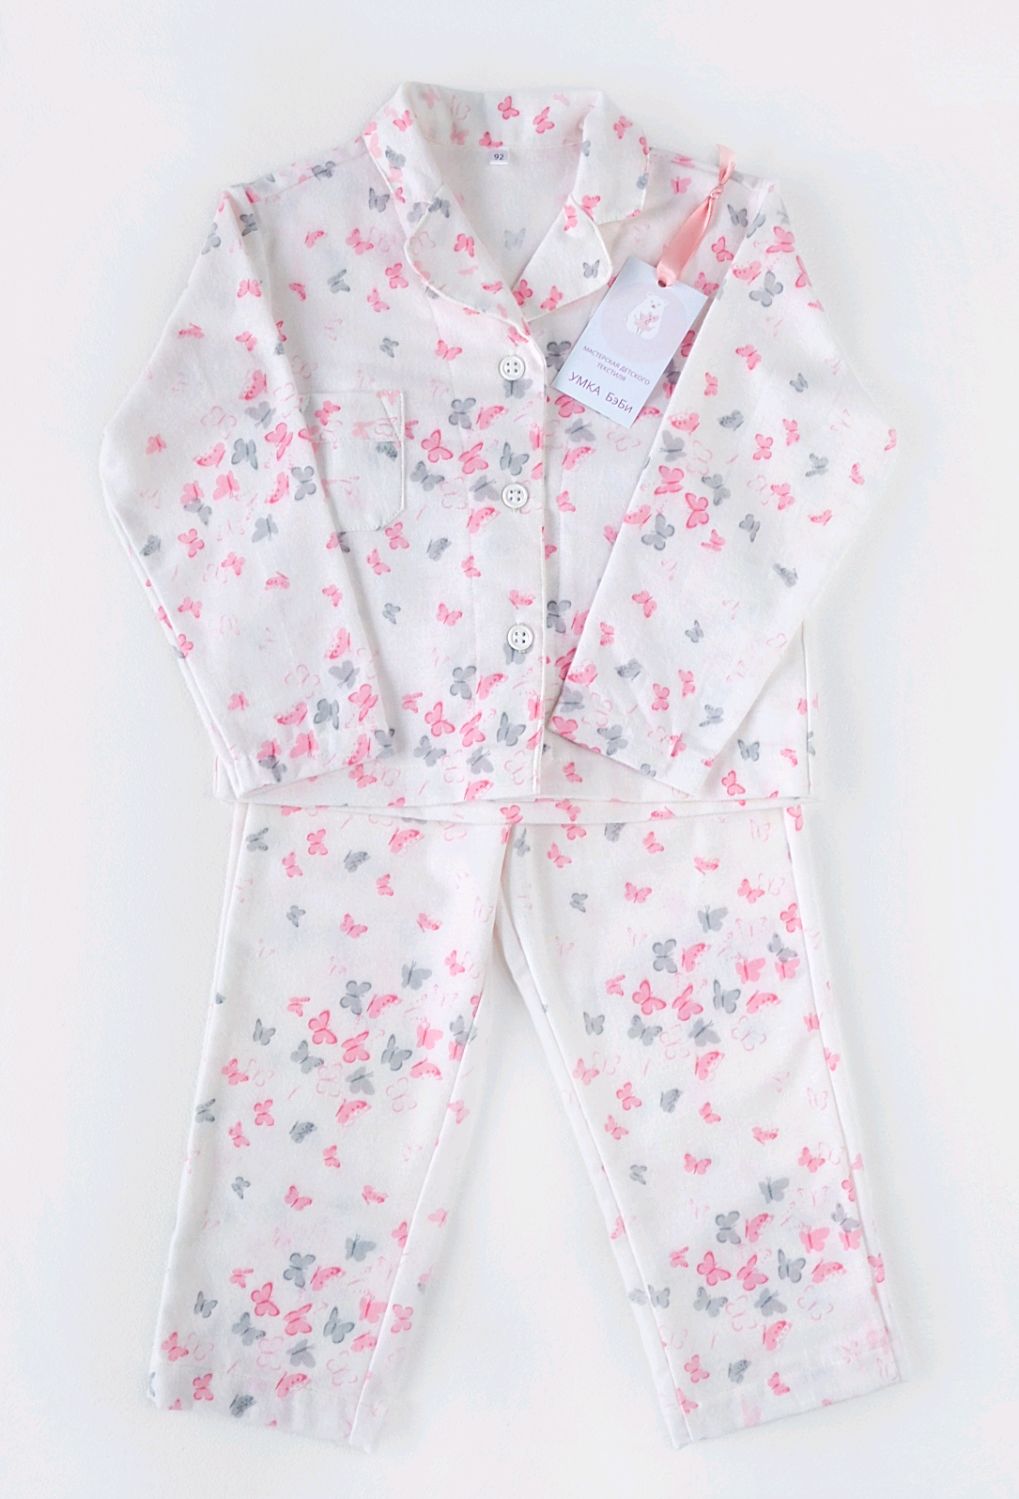 Купить детские пижамы недорого - интернет магазин Ивановотекстиль